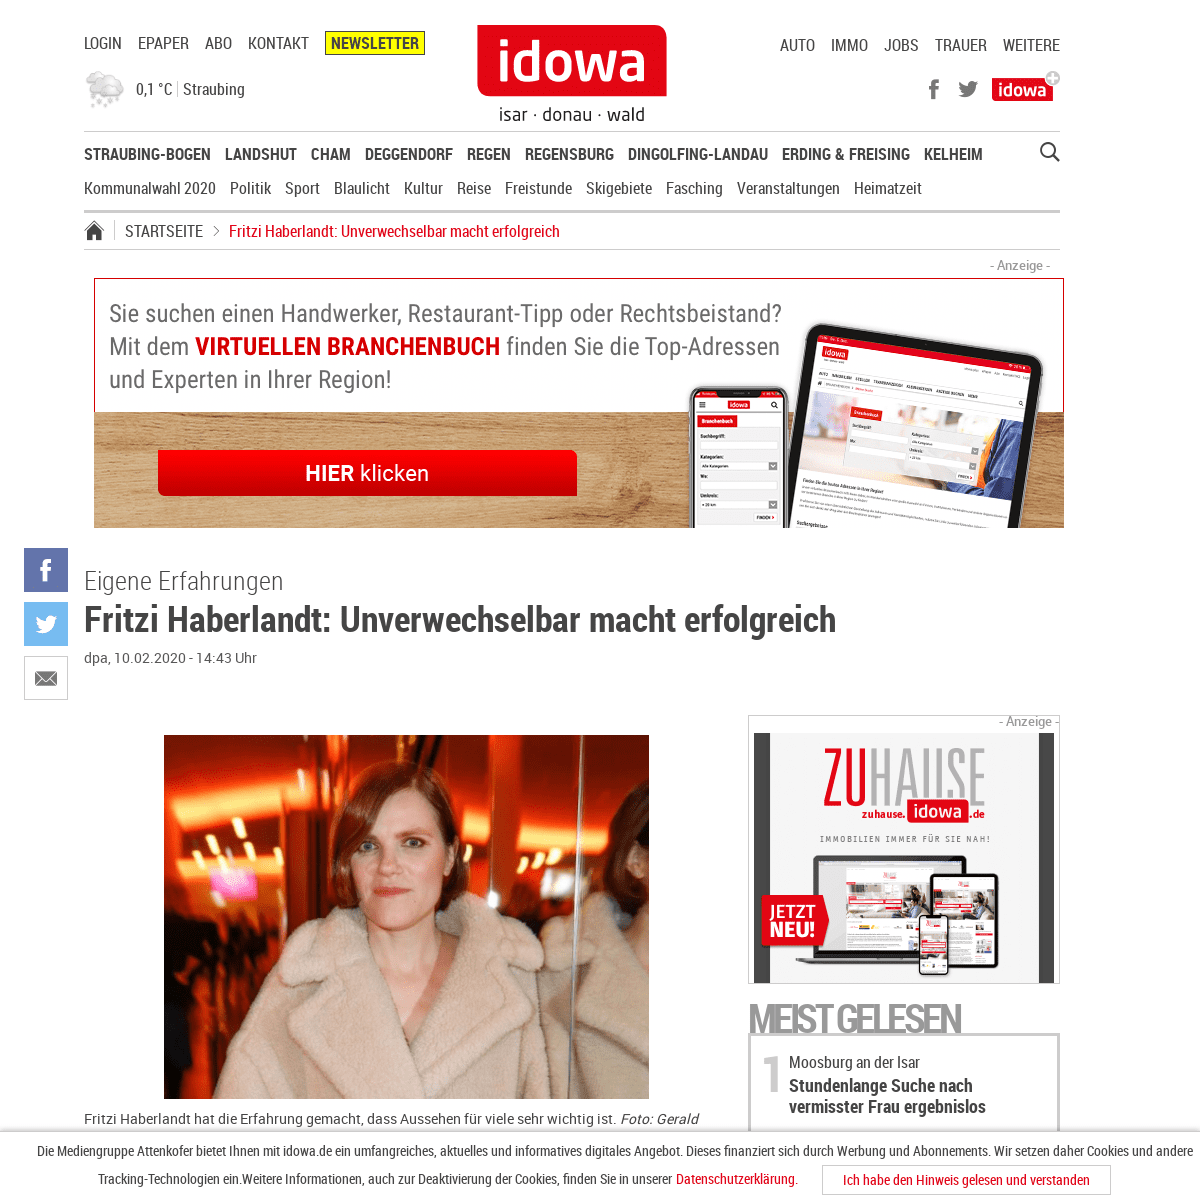 A complete backup of www.idowa.de/inhalt.eigene-erfahrungen-fritzi-haberlandt-unverwechselbar-macht-erfolgreich.620789af-4bc8-42